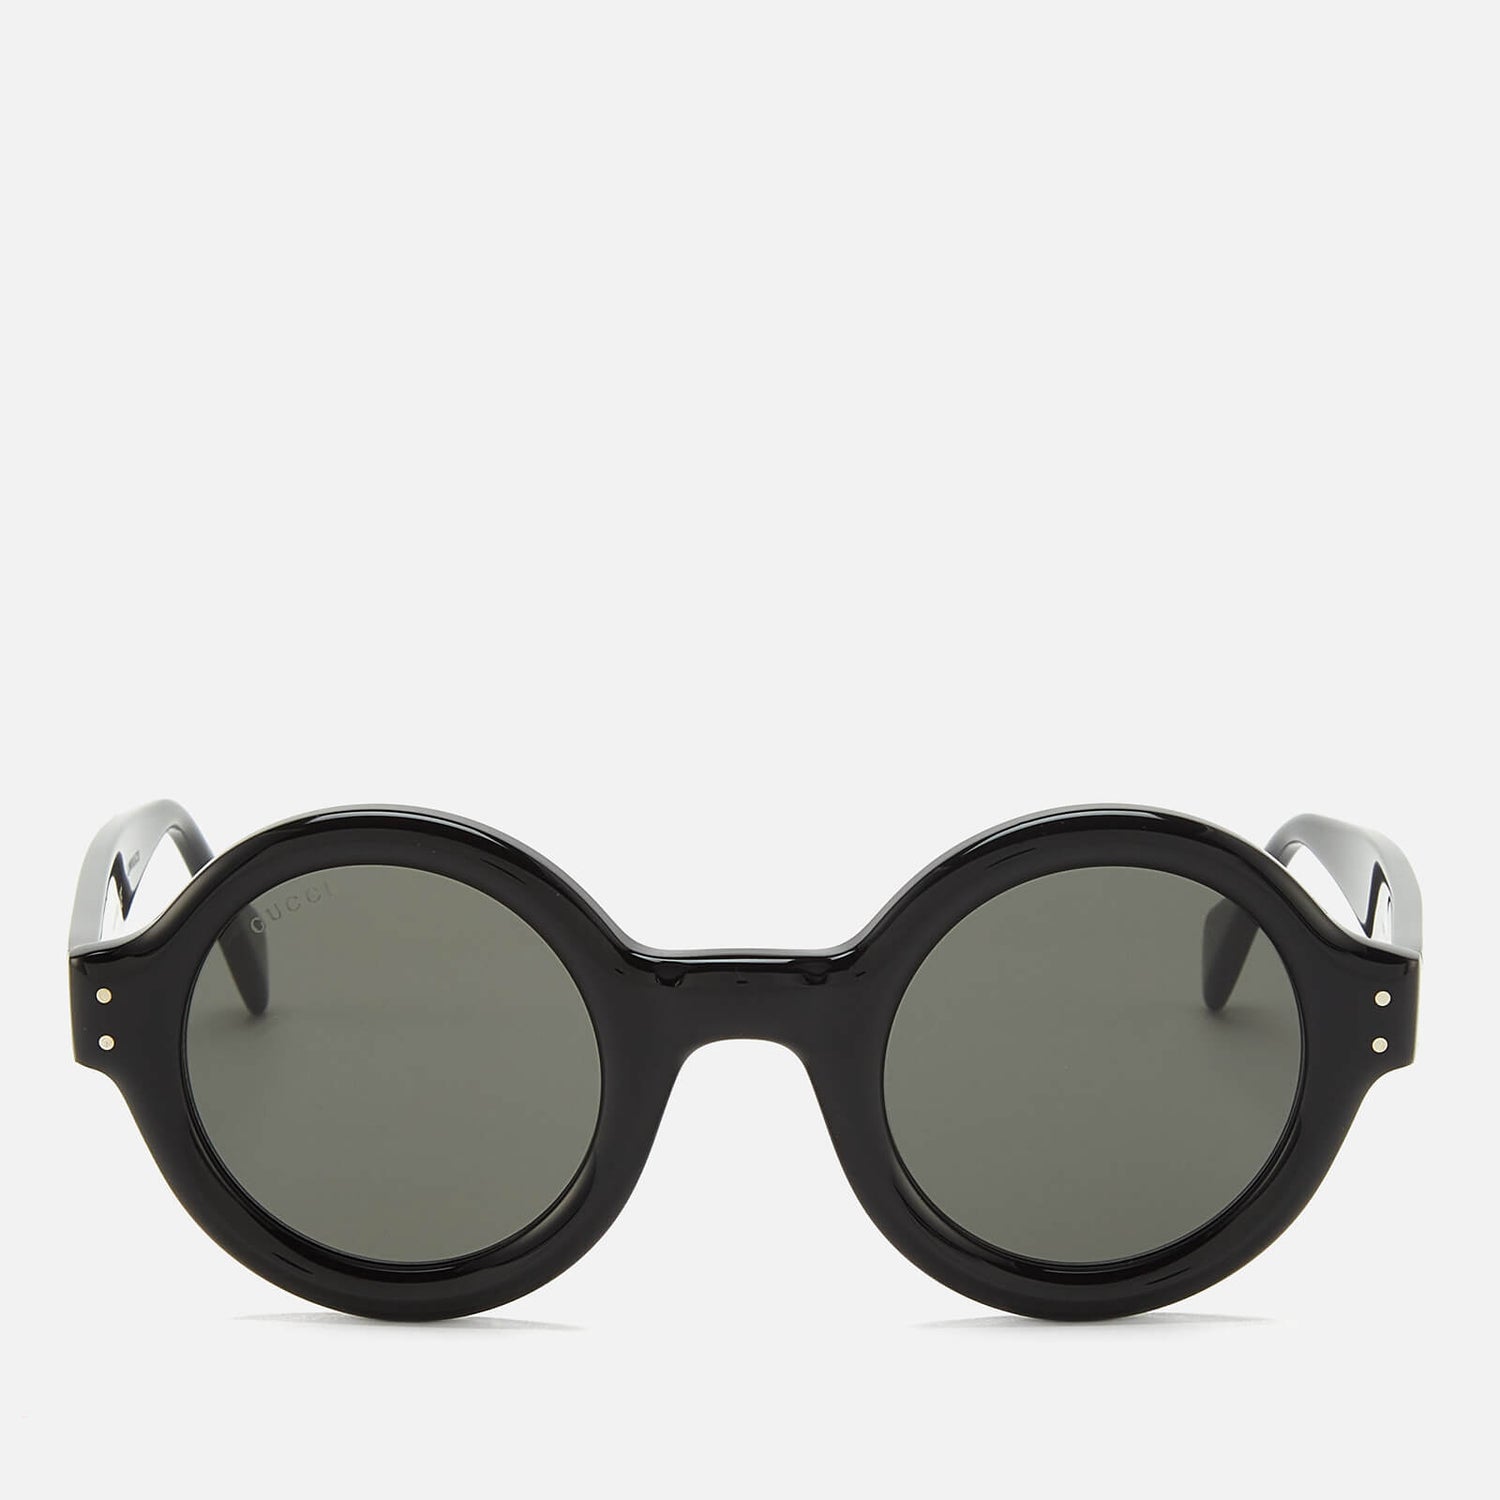 Gucci Men's Acetate Frame Sunglasses - Shiny Black